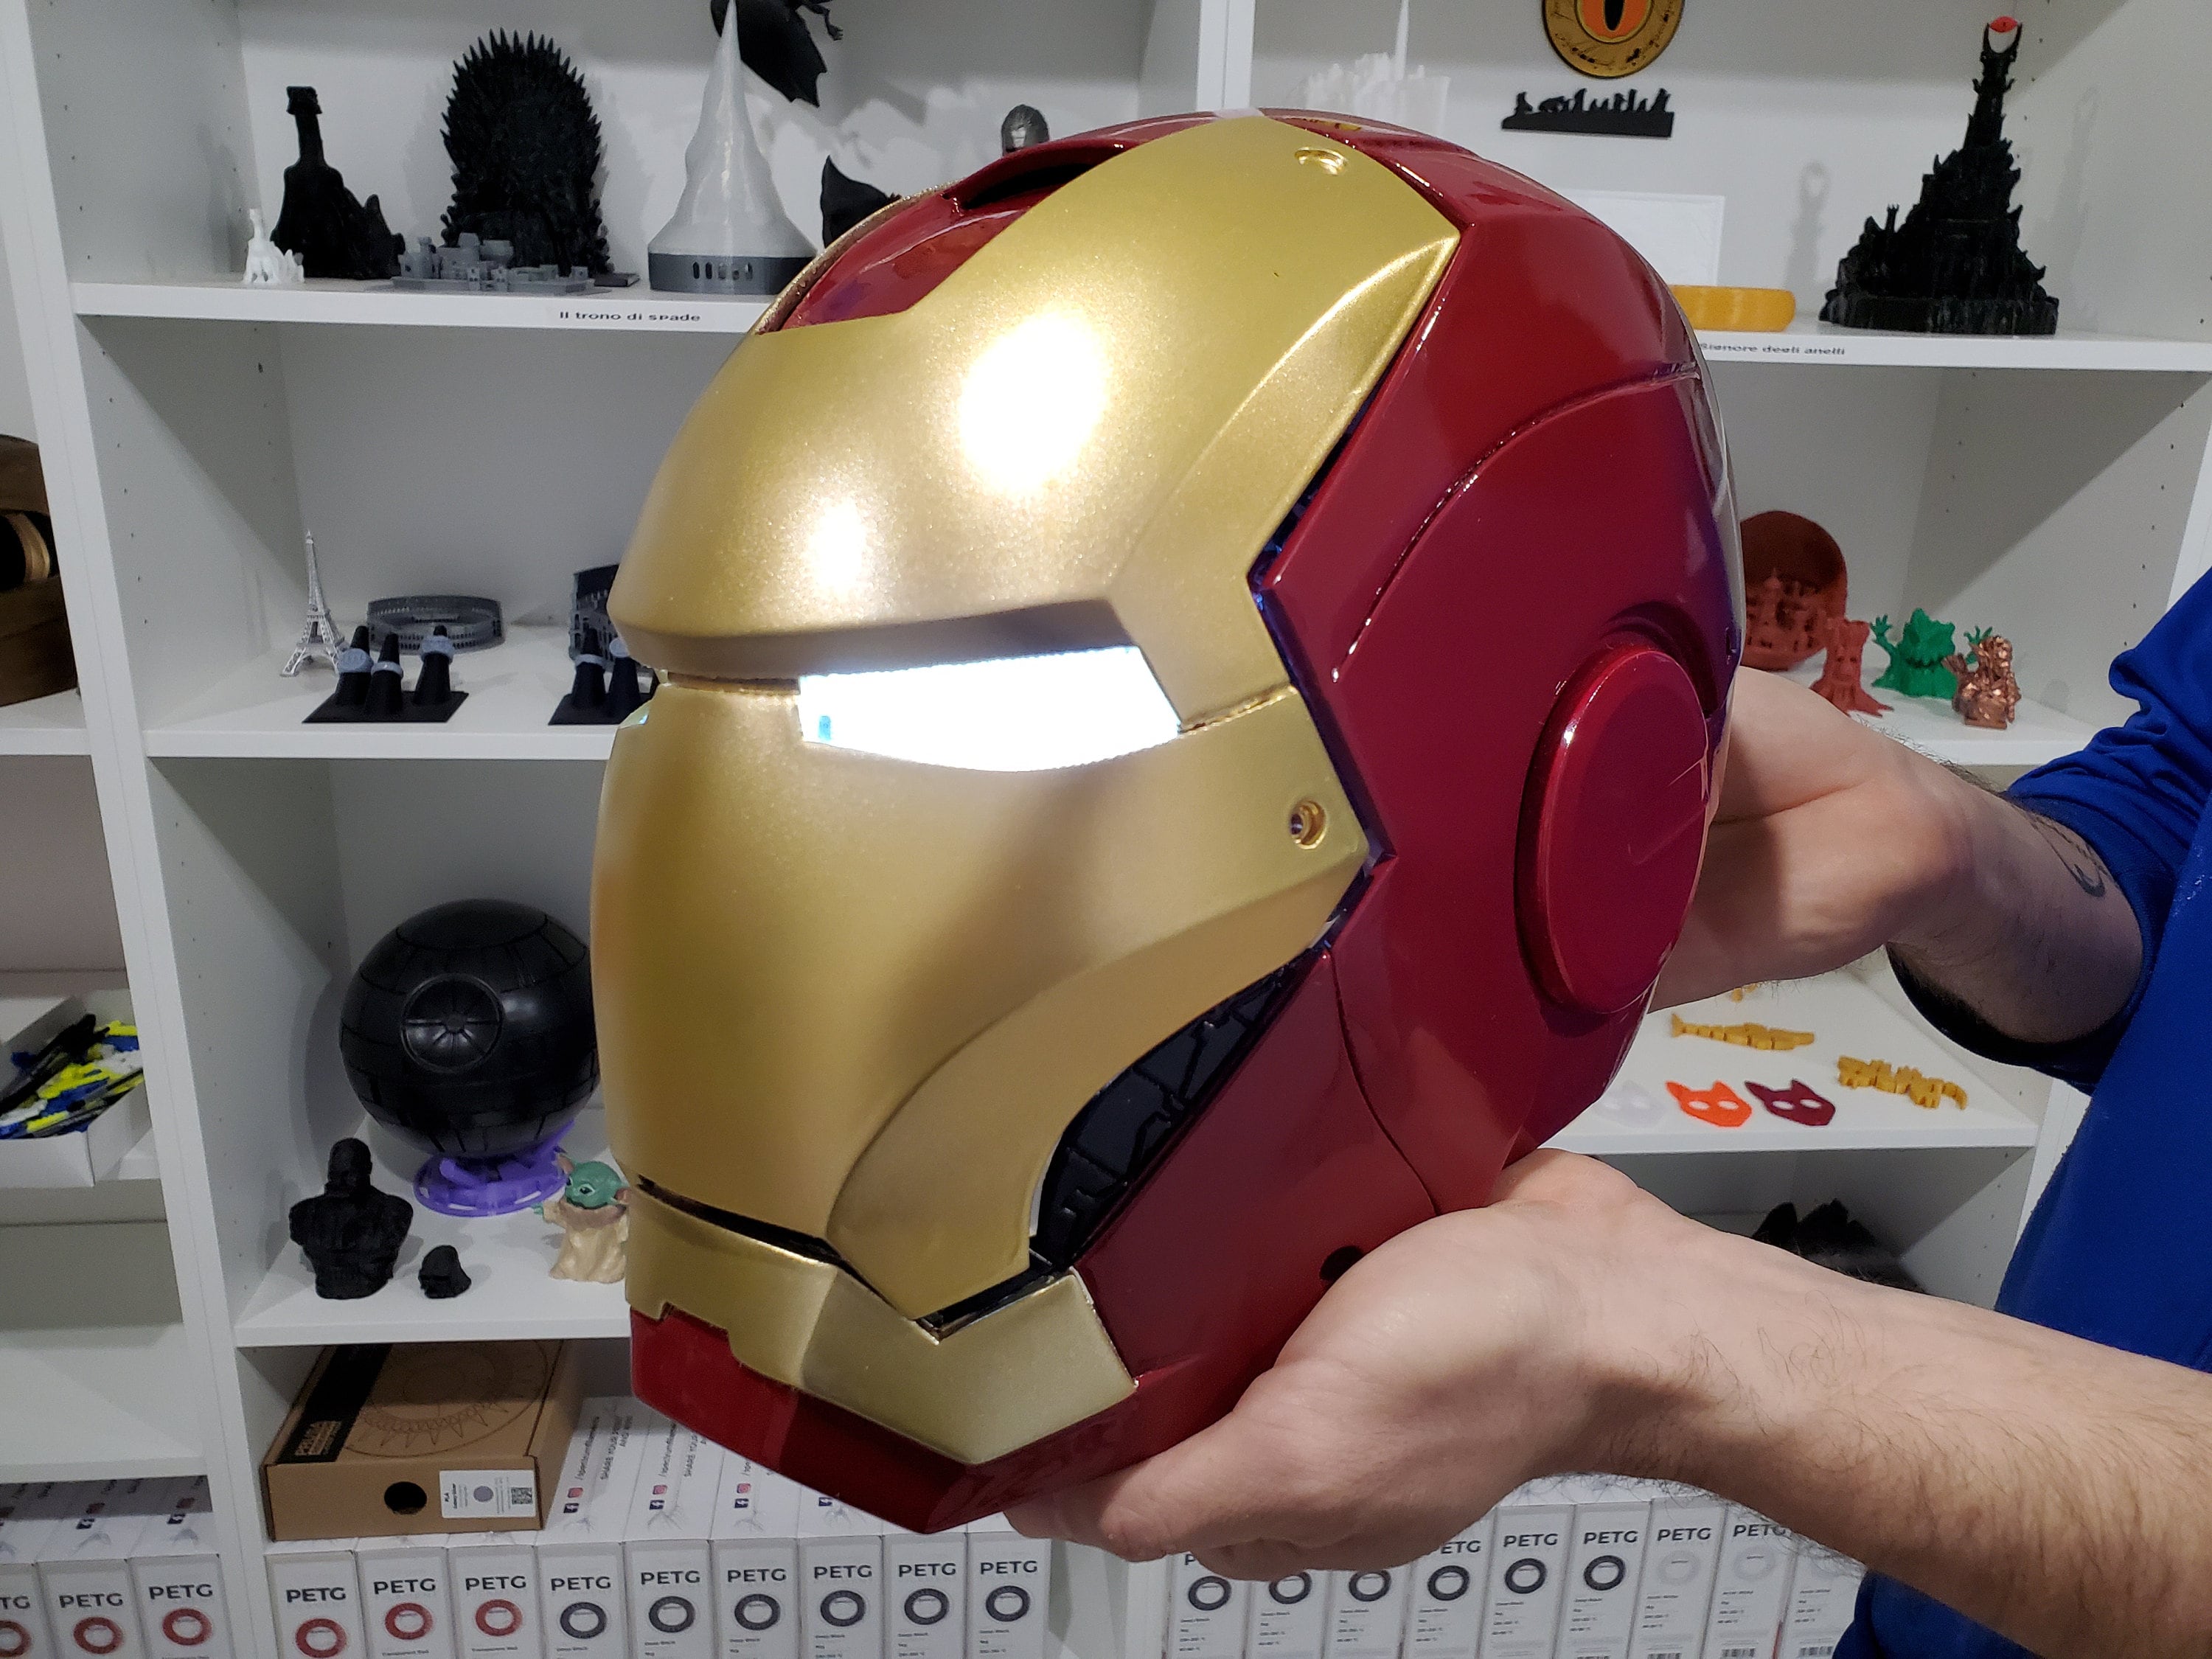 Casque Iron Man portable avec électronique -  France